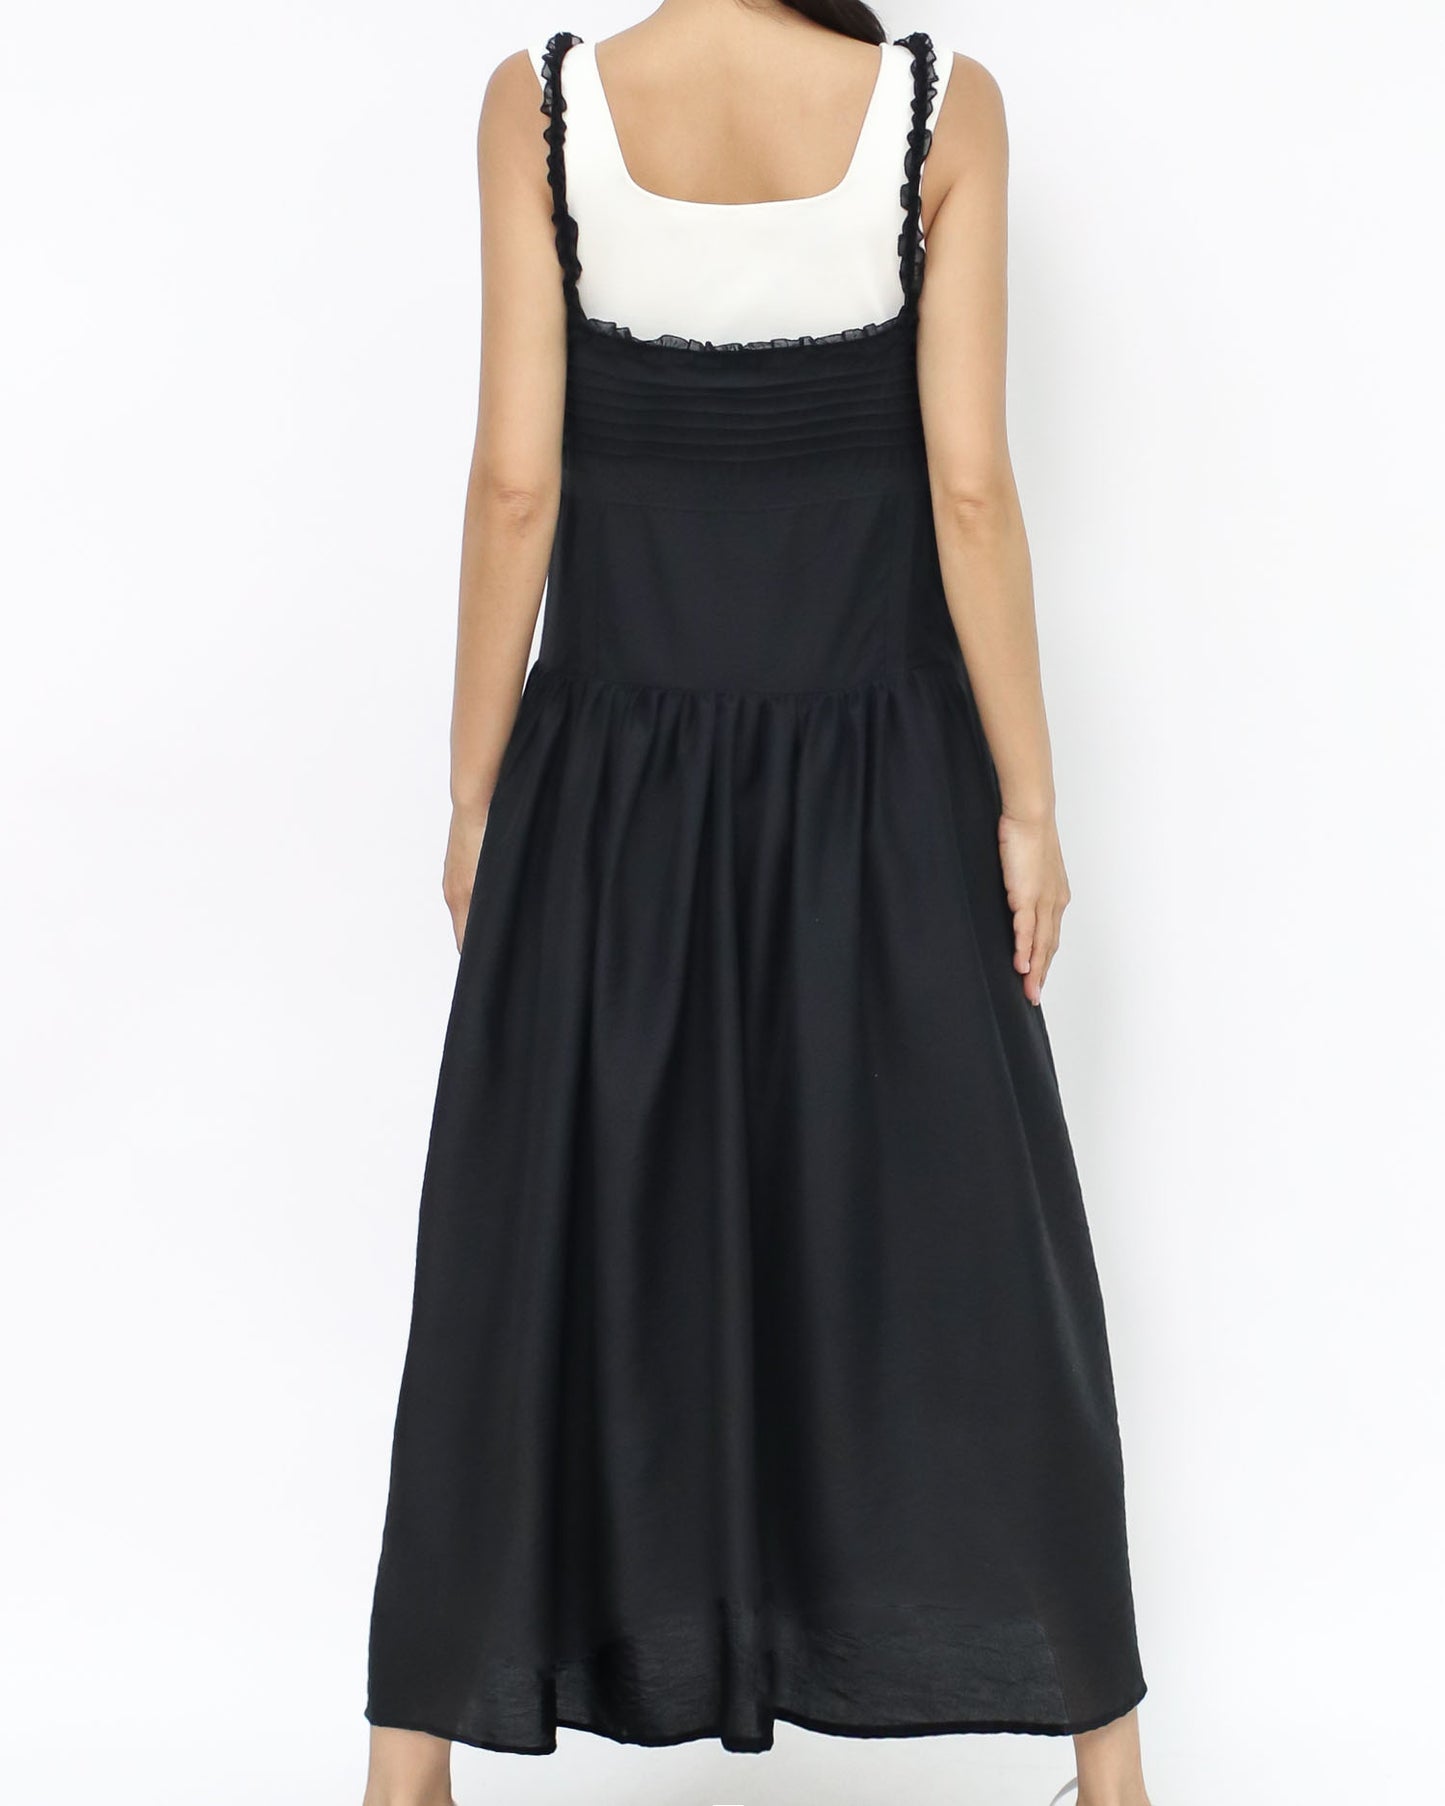 black crochet boho longline slip dress *pre-order*